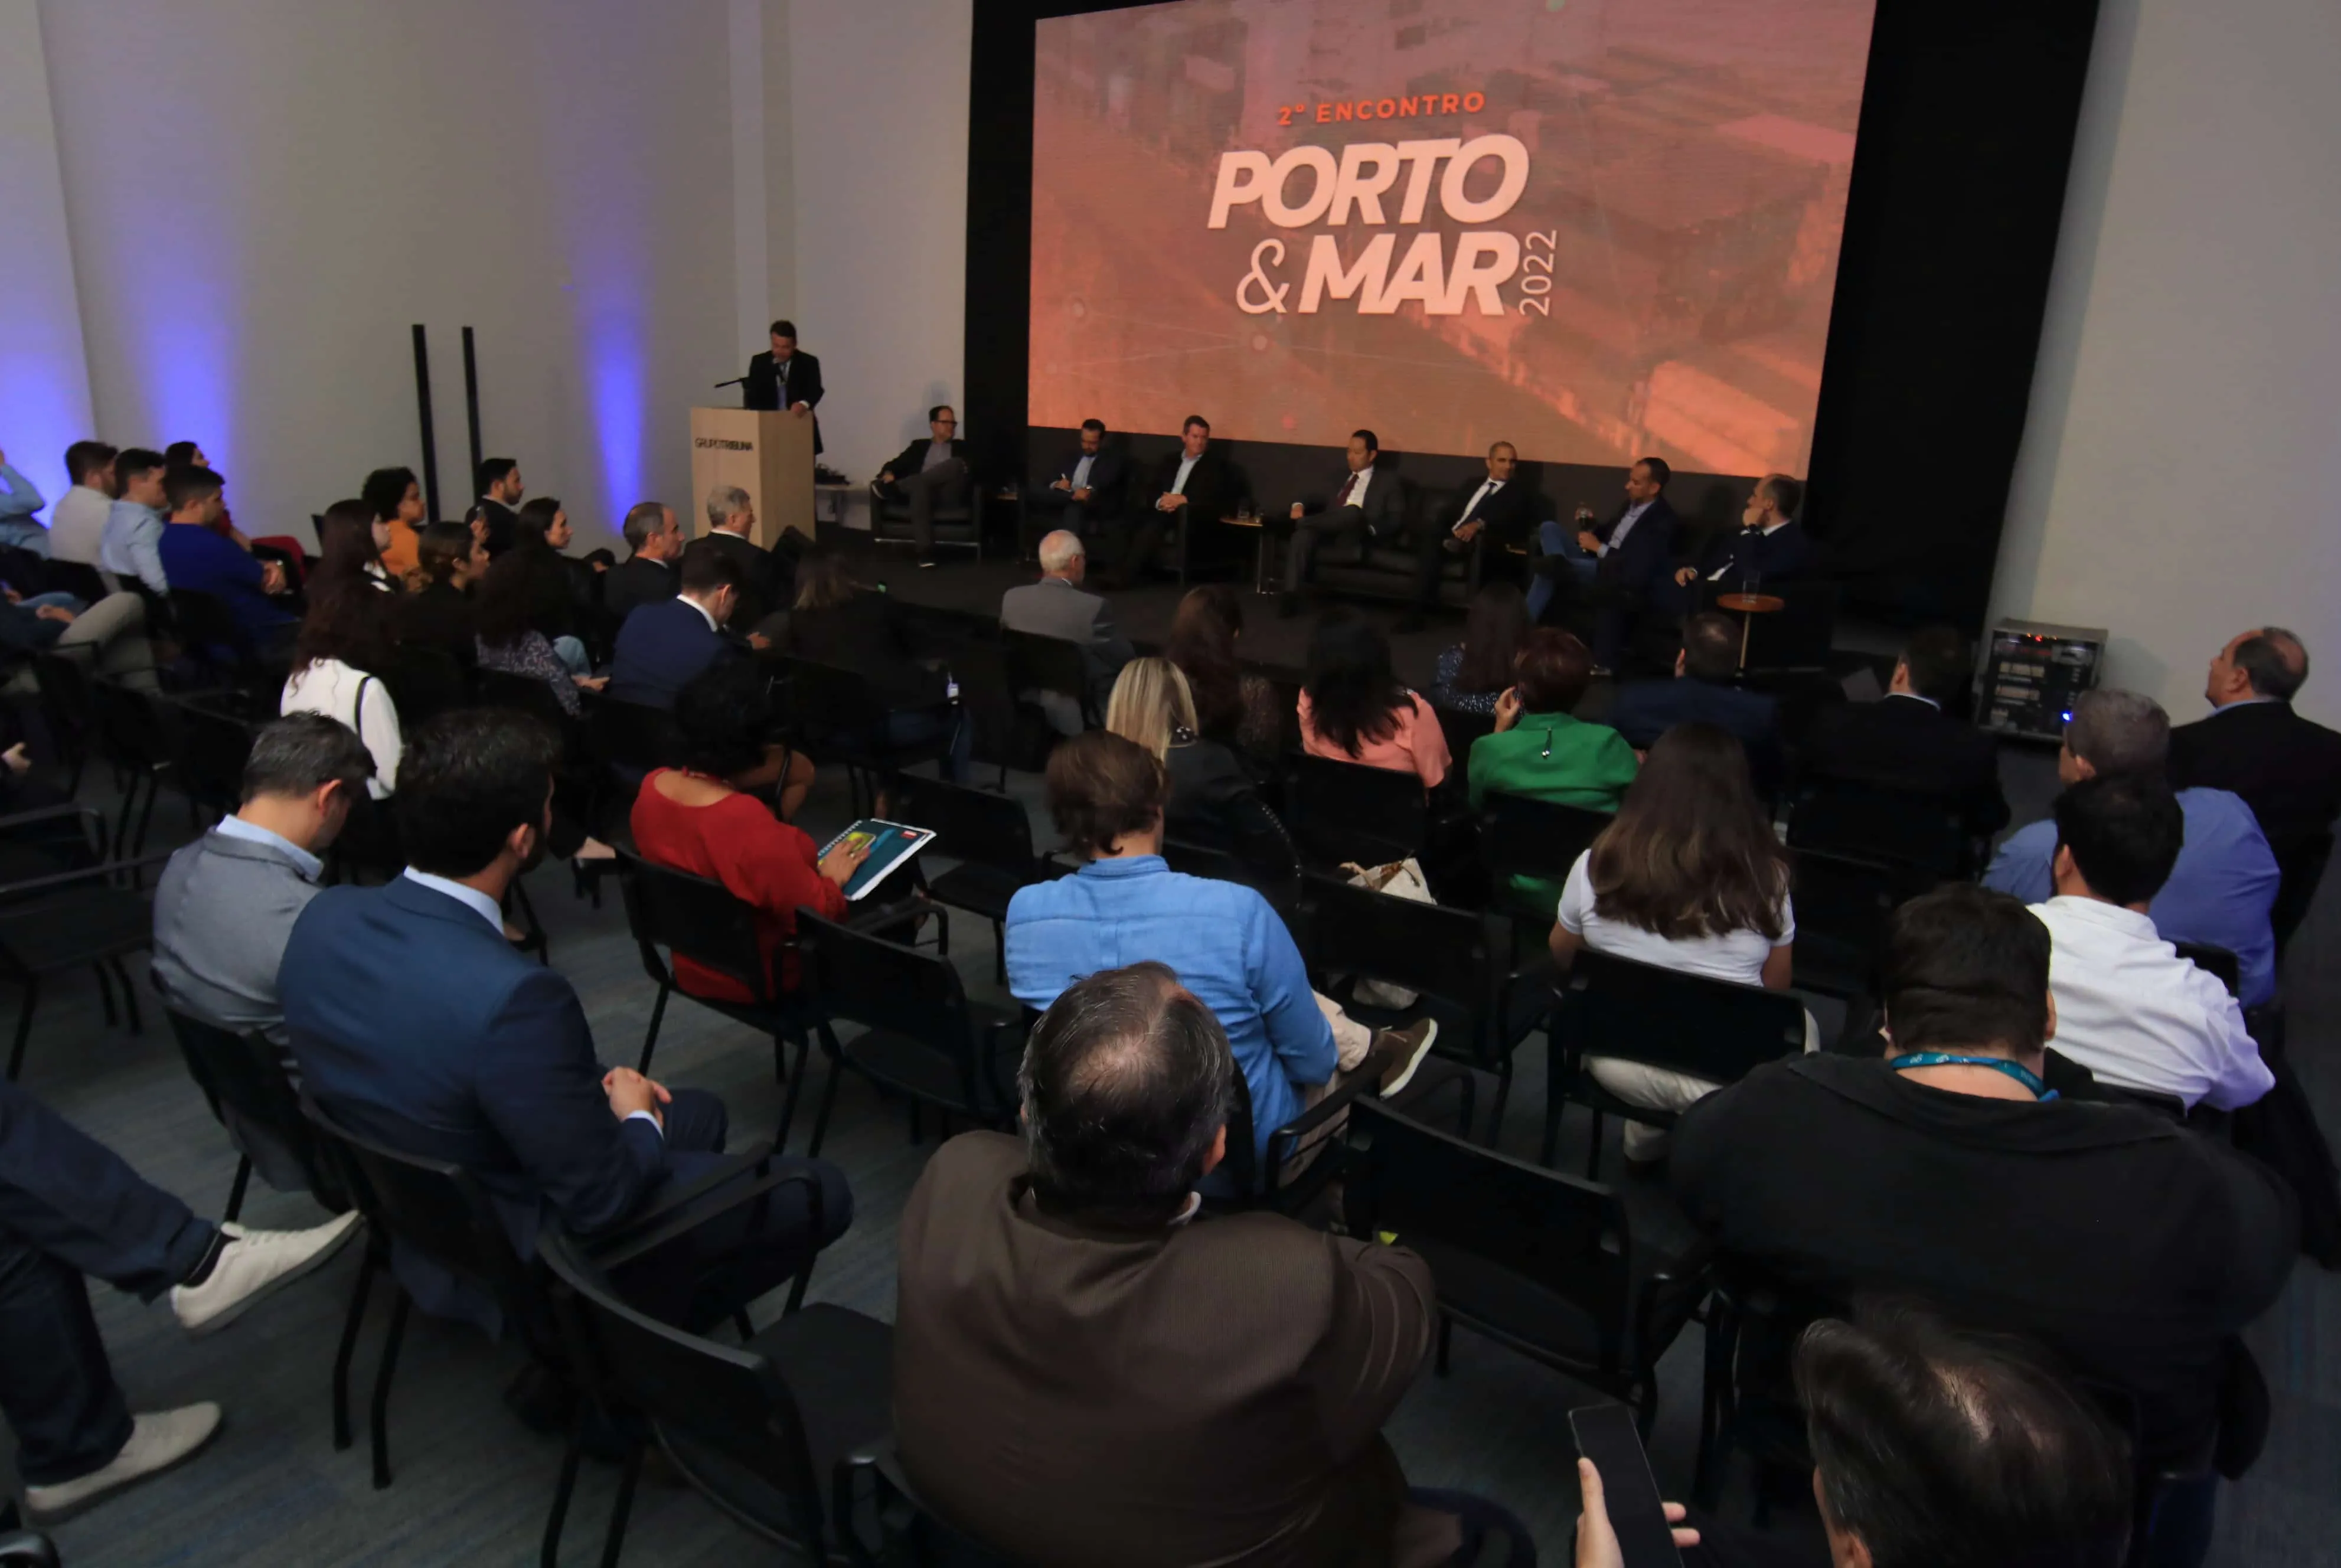 Segunda edição do Encontro Porto & Mar 2022 aconteceu, ontem à tarde, no auditório do Grupo Tribuna, em Santos, com palestras e um painel